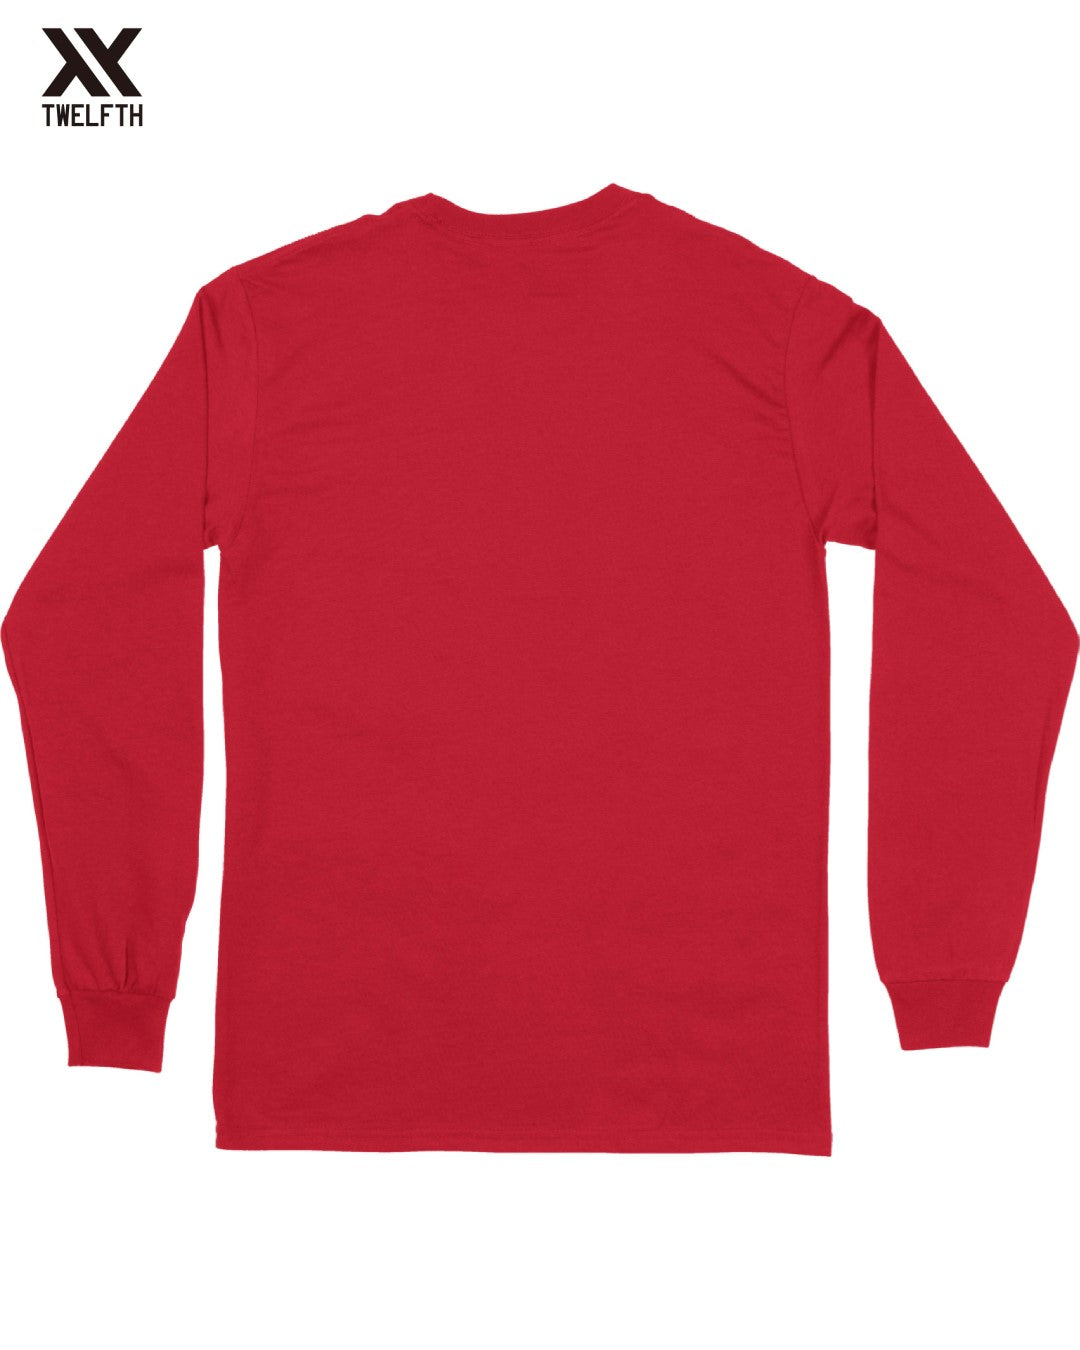 Leverkusen Crest T-Shirt - Mens - Long Sleeve